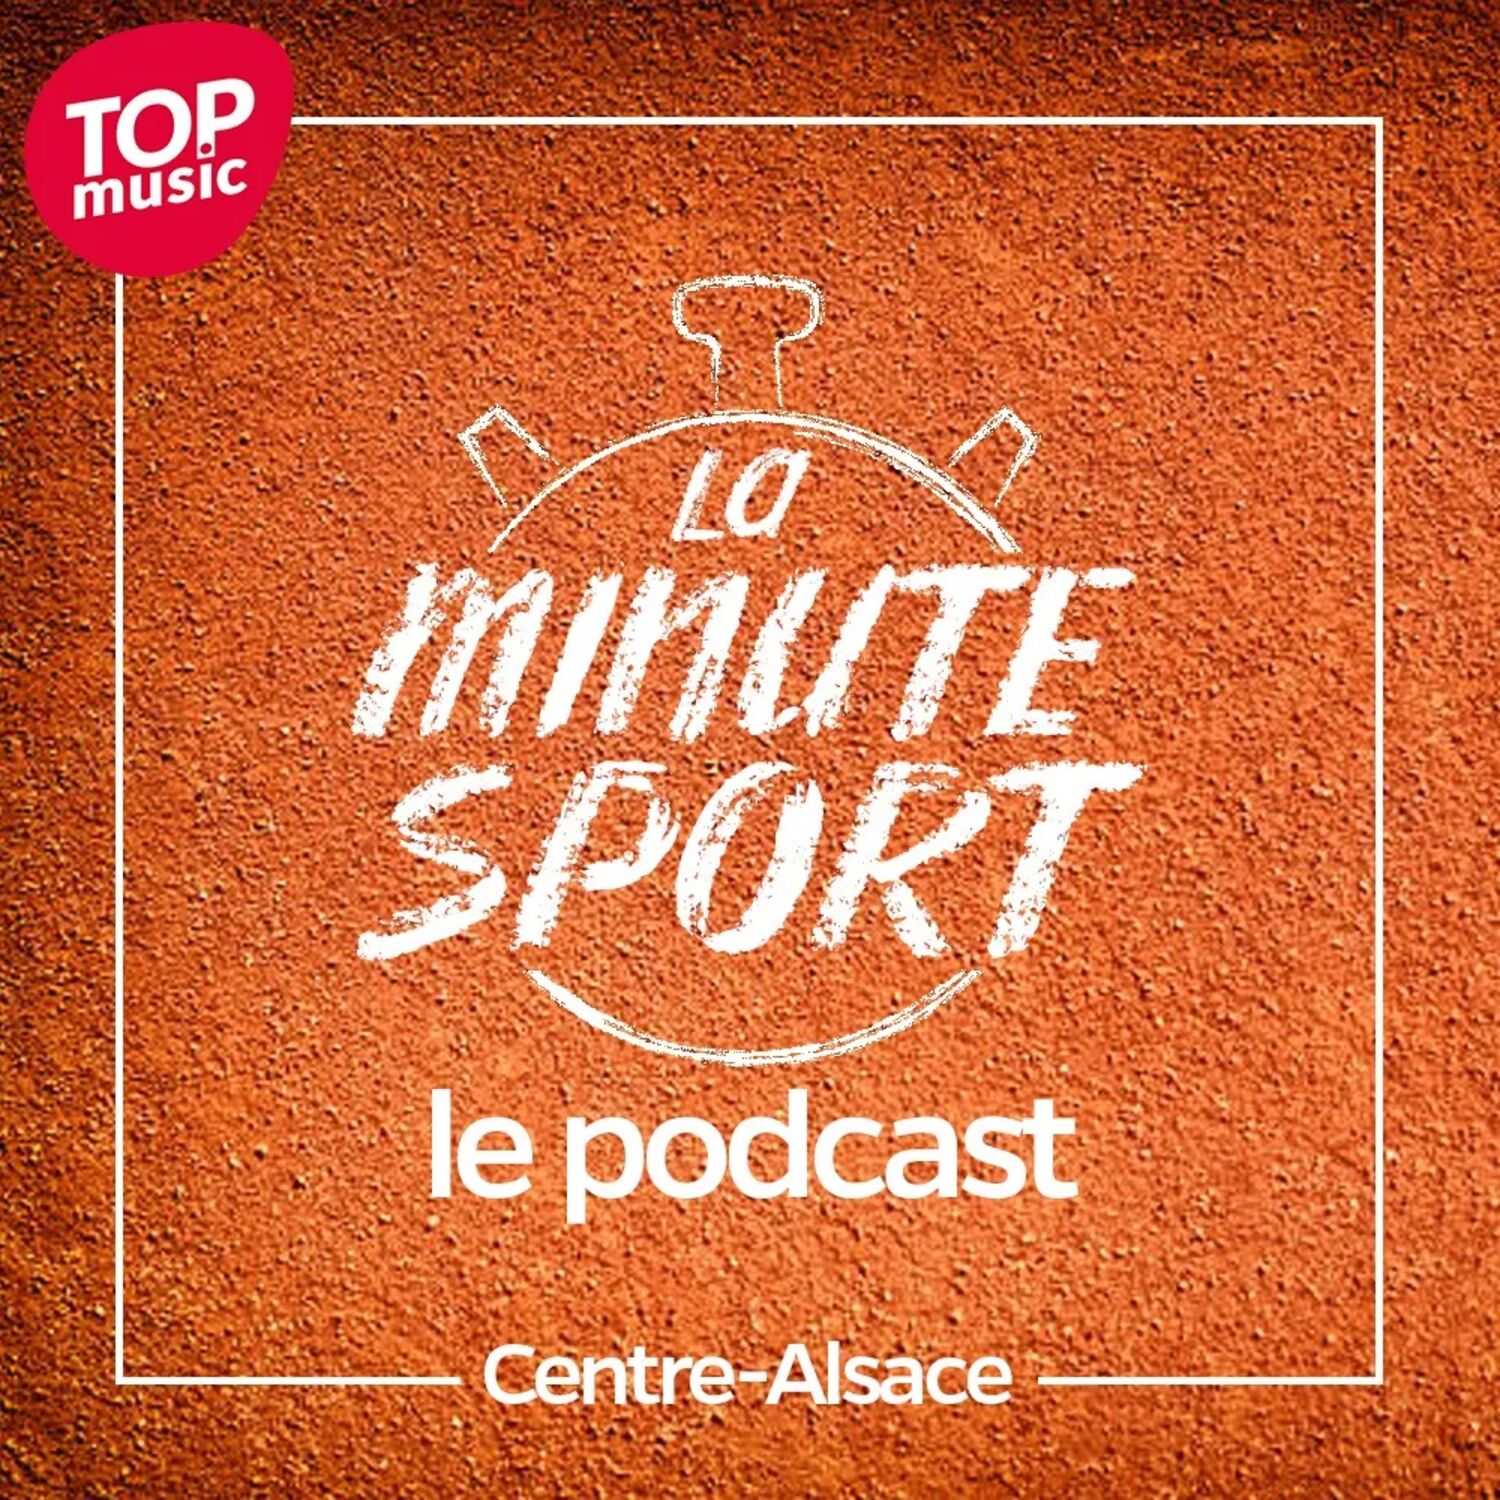 La Minute sport - Centre-Alsace - vendredi 20 janvier